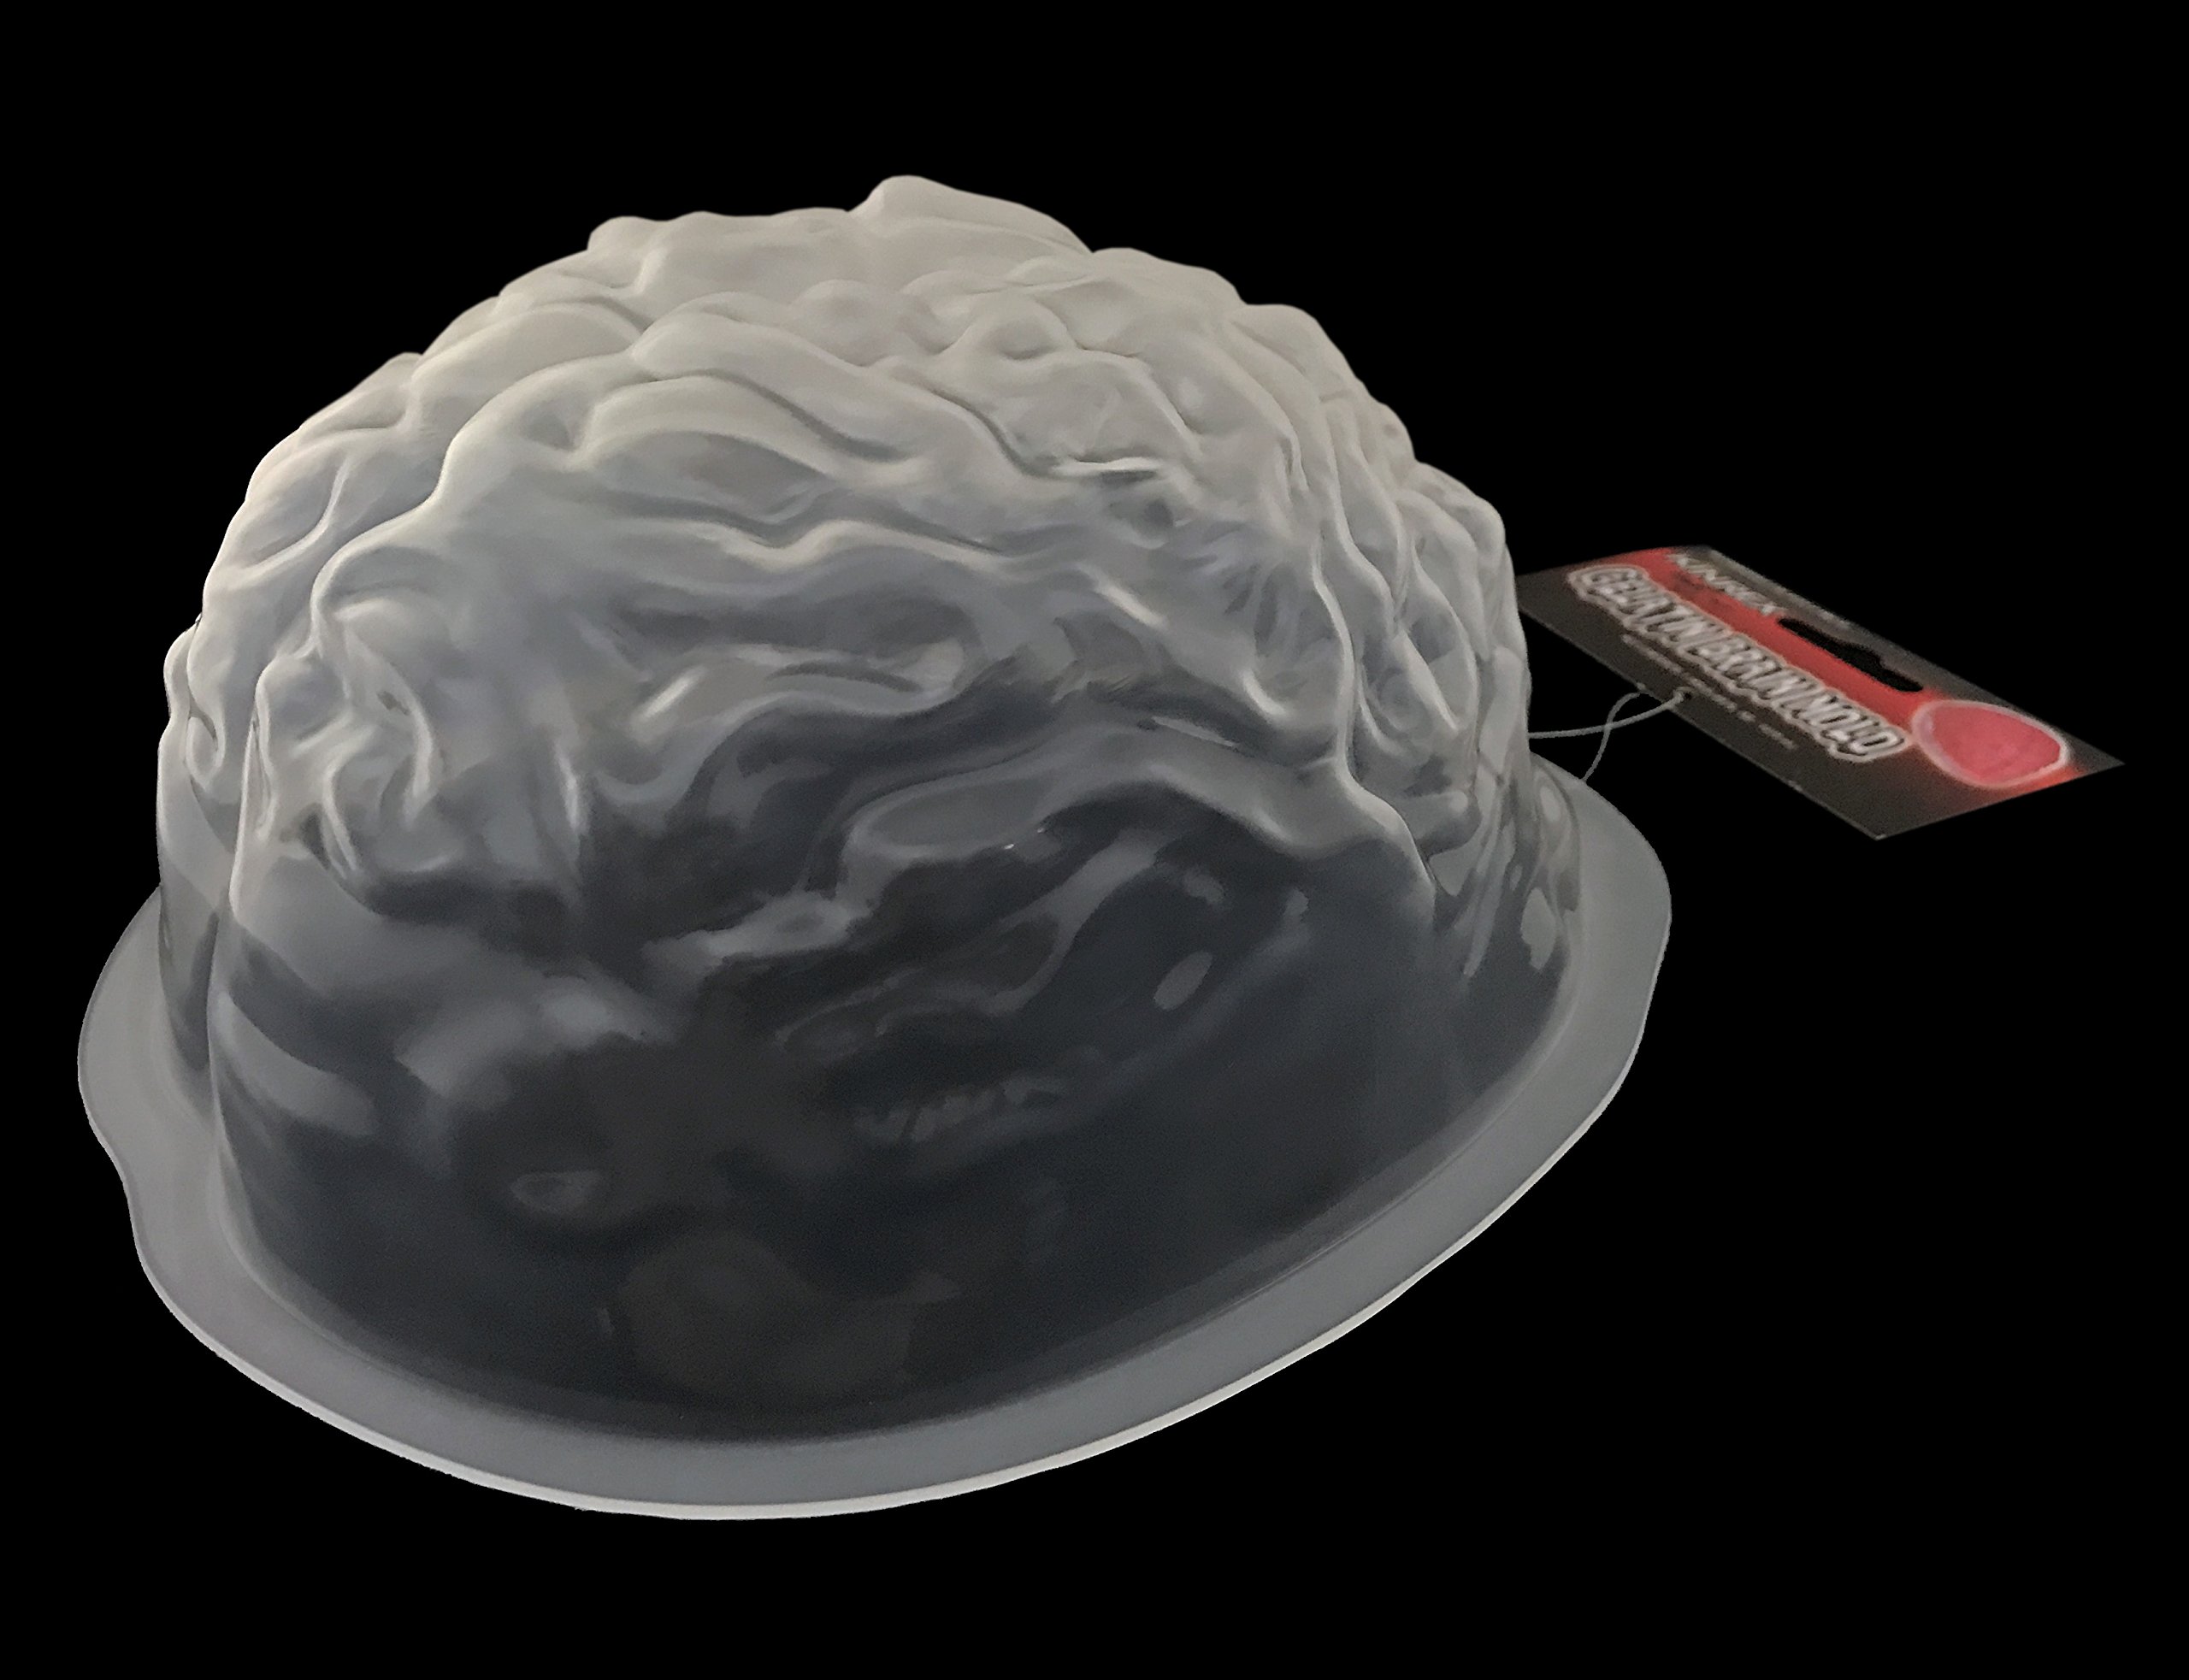 KINREX Halloween Brain Gelatin Mold - Plastic Jello Molds Baking Decorations